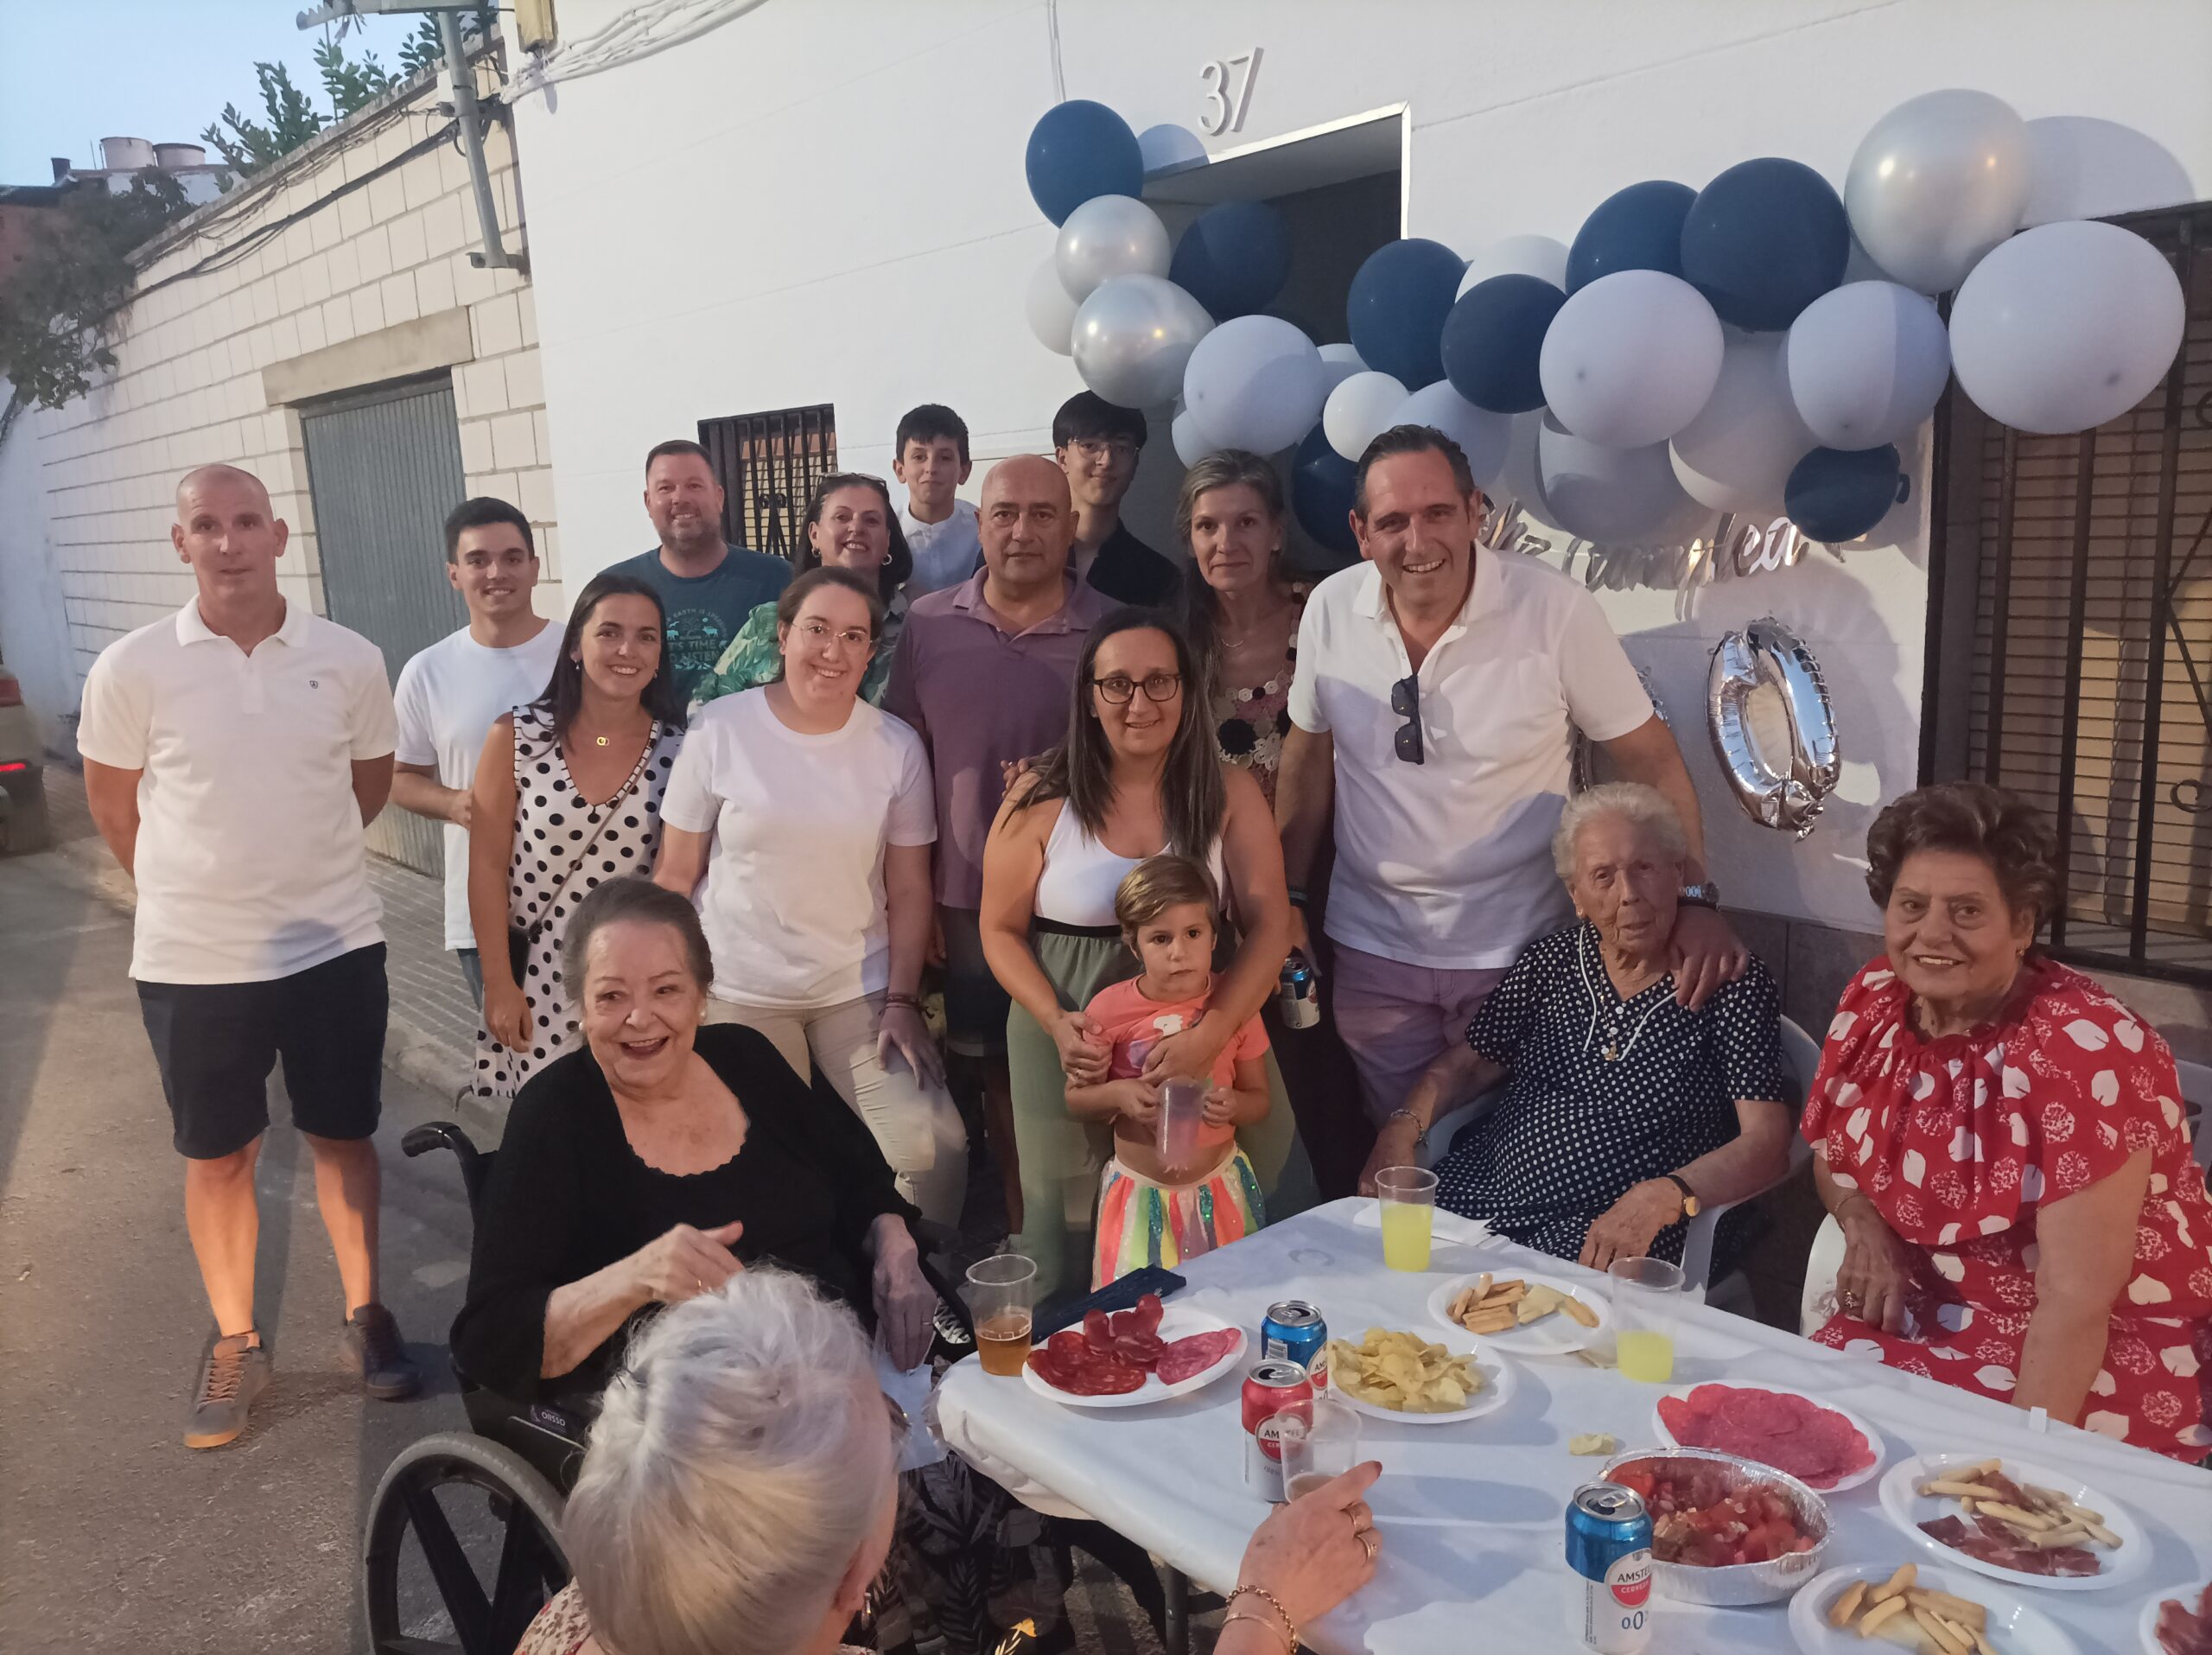 La celebración centenaria de Fernanda Felipe Pérez. 100 años de amor, generosidad y memorias en Peñarroya-Pueblonuevo